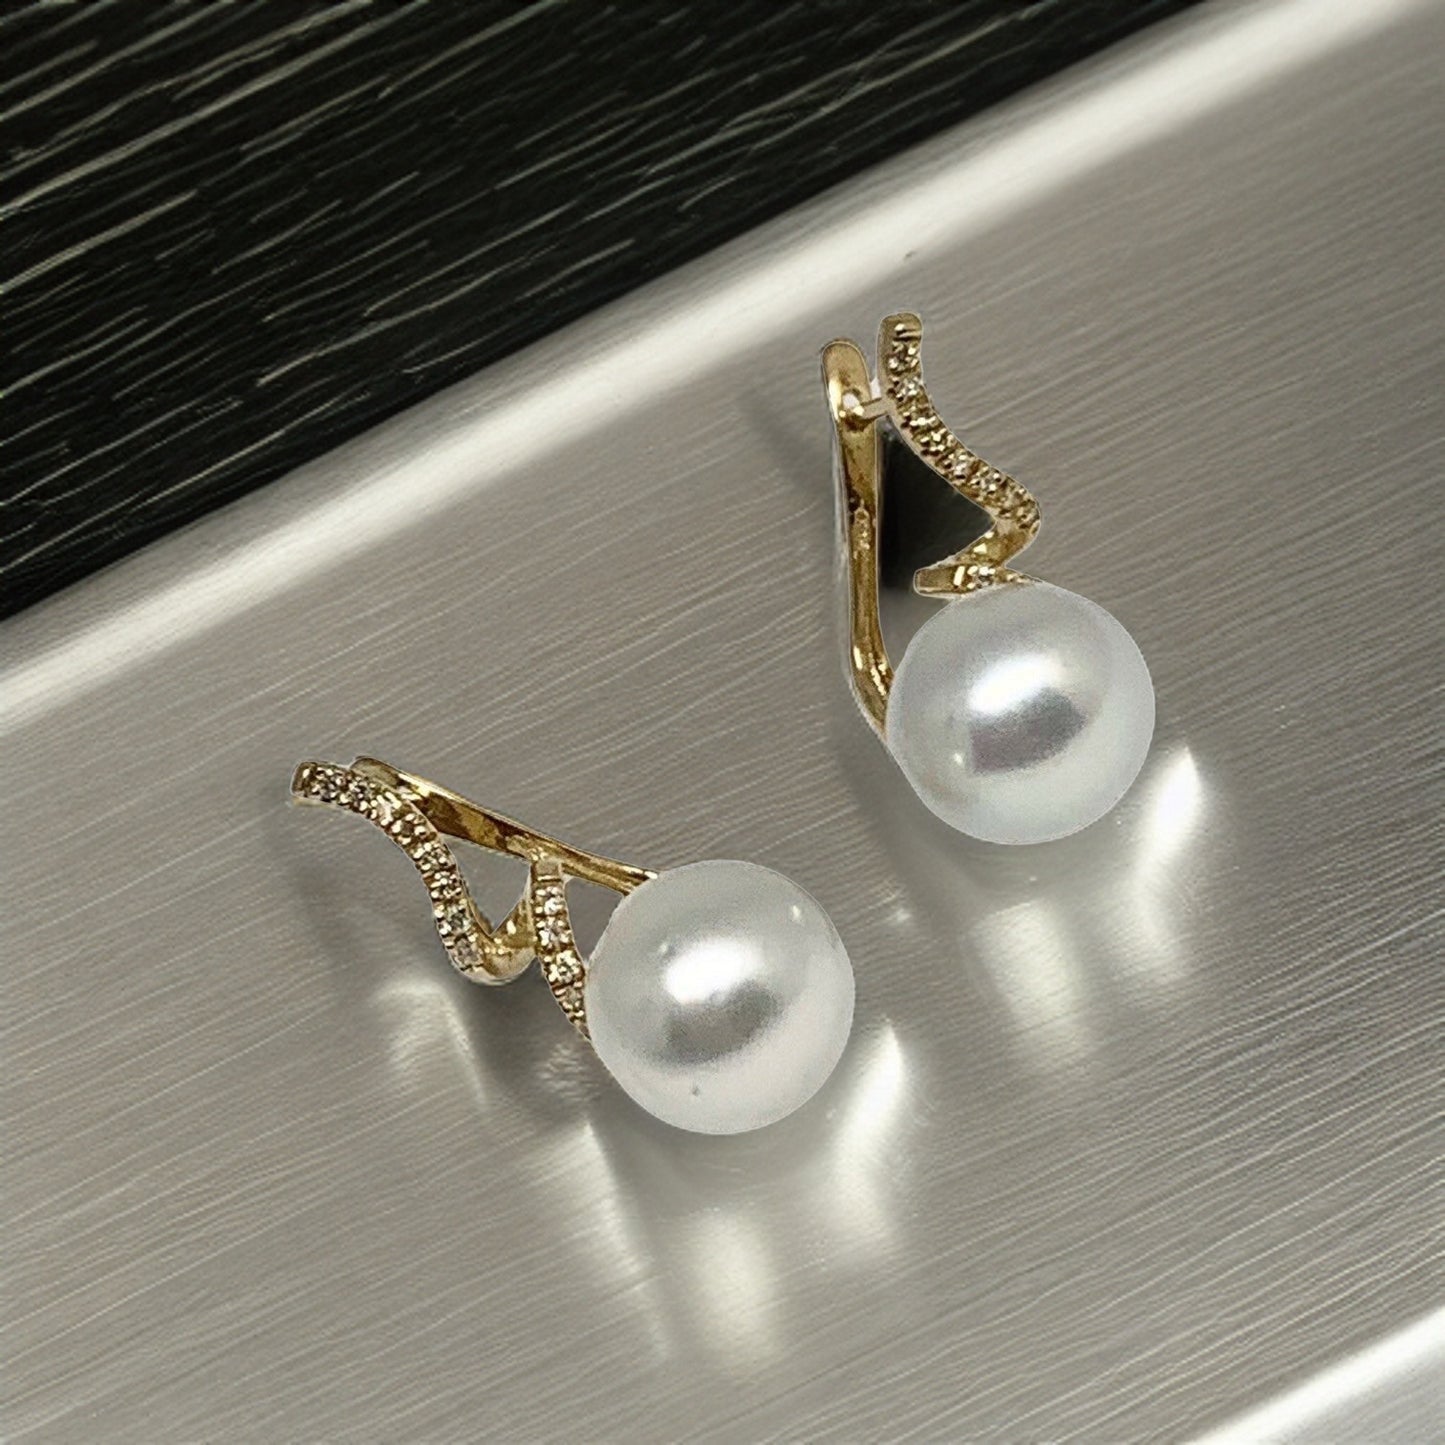 Diamond South Sea Pearl Earrings 14k Gold 11 mm Certified $2,950 910809